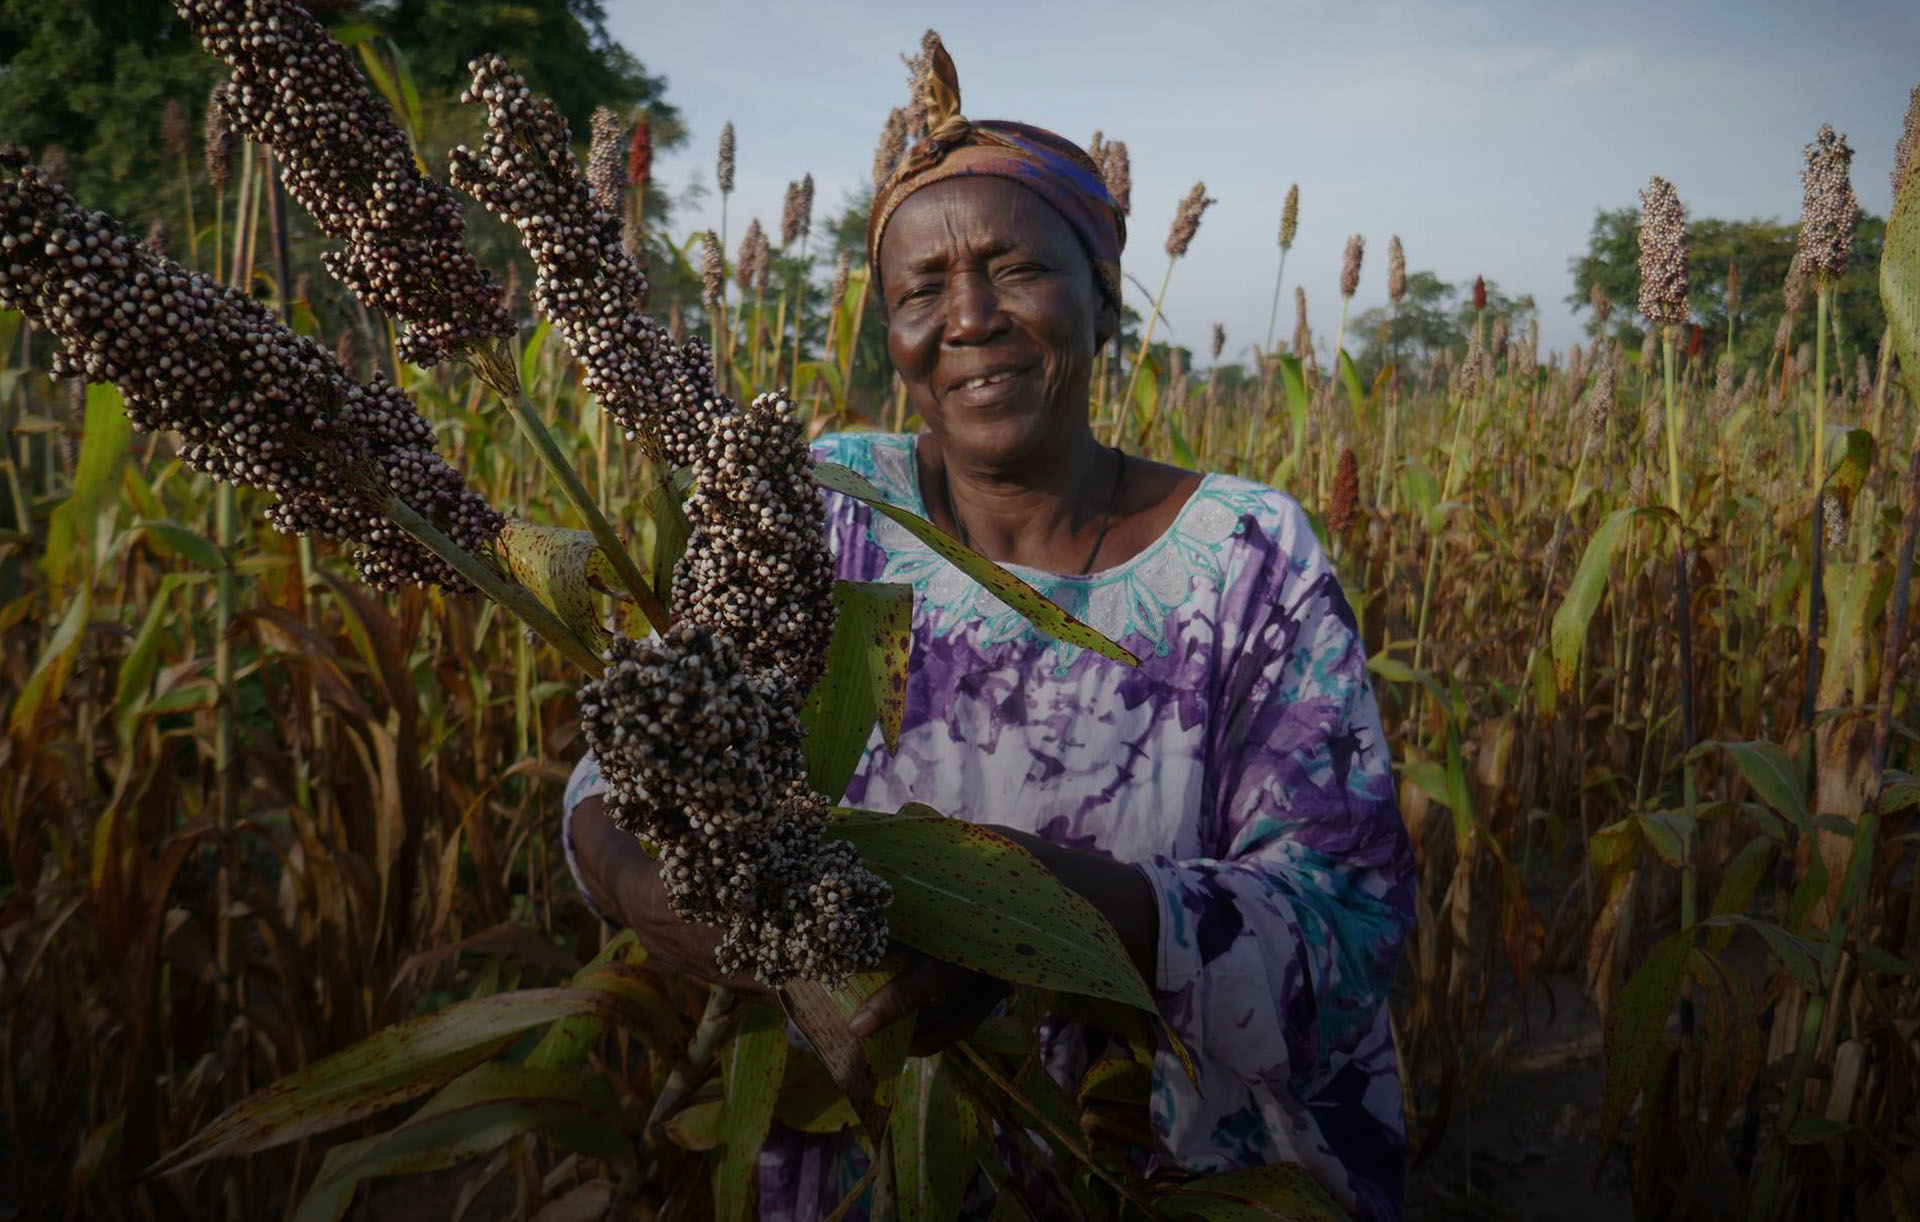 Dialoger*in bei Corris: Eine Frau freut sich über ihre Ernte